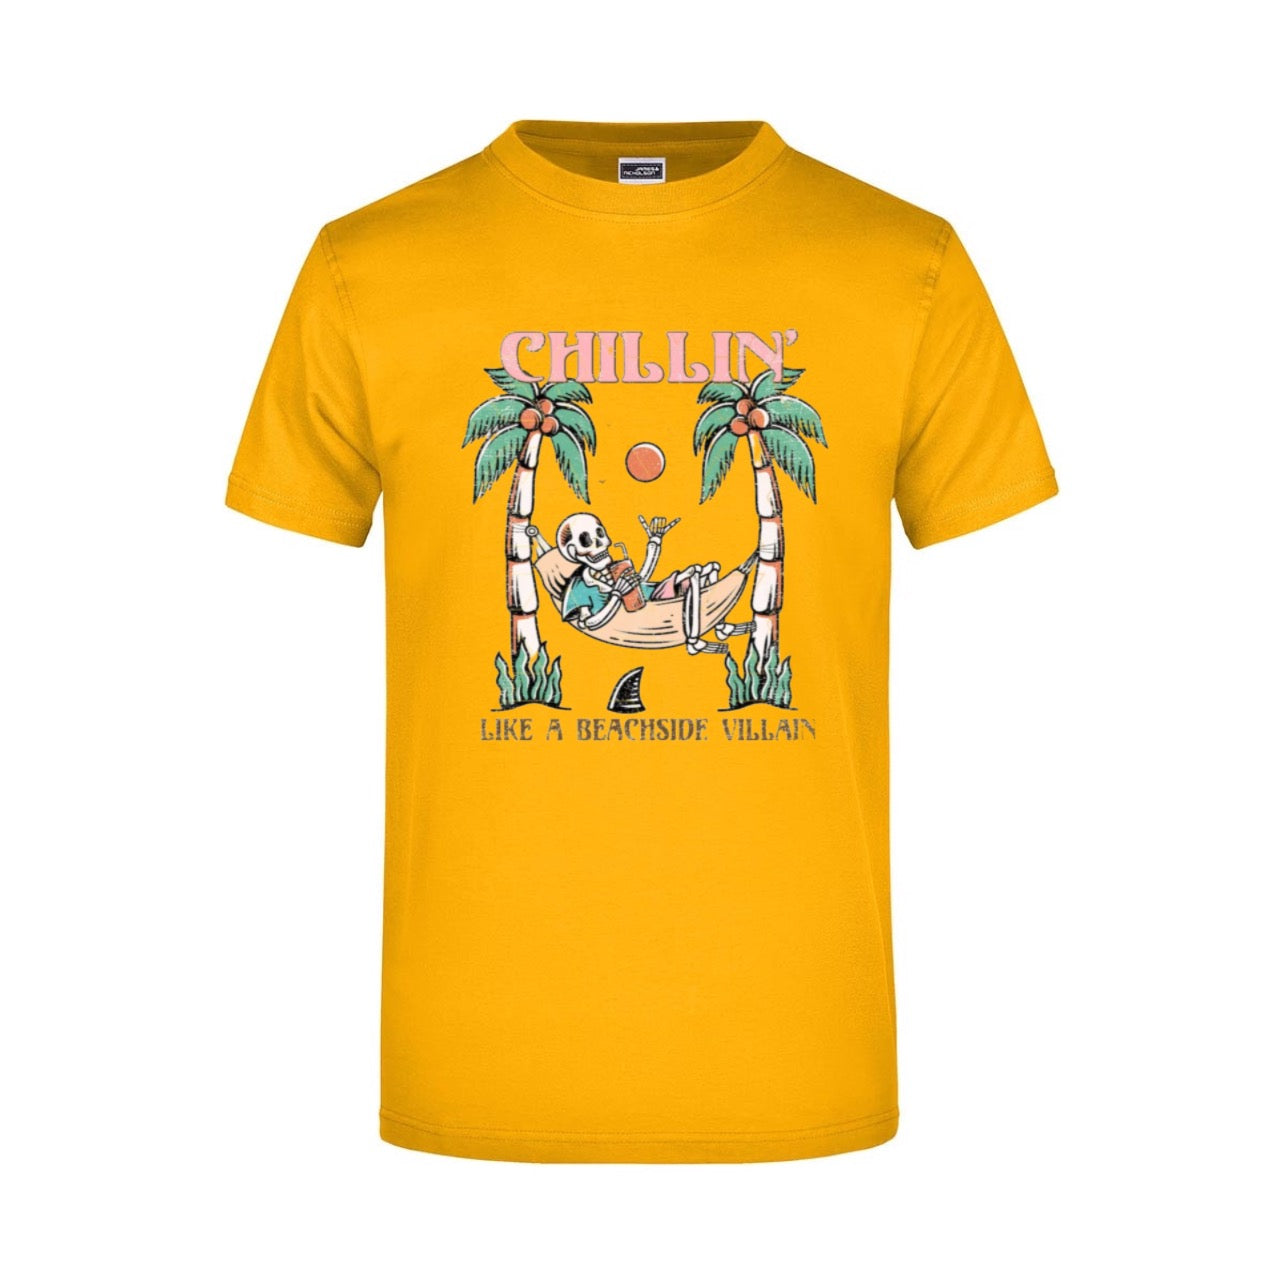 ZarahSkull Shirt golden yellow "chillin like a beachside villain“